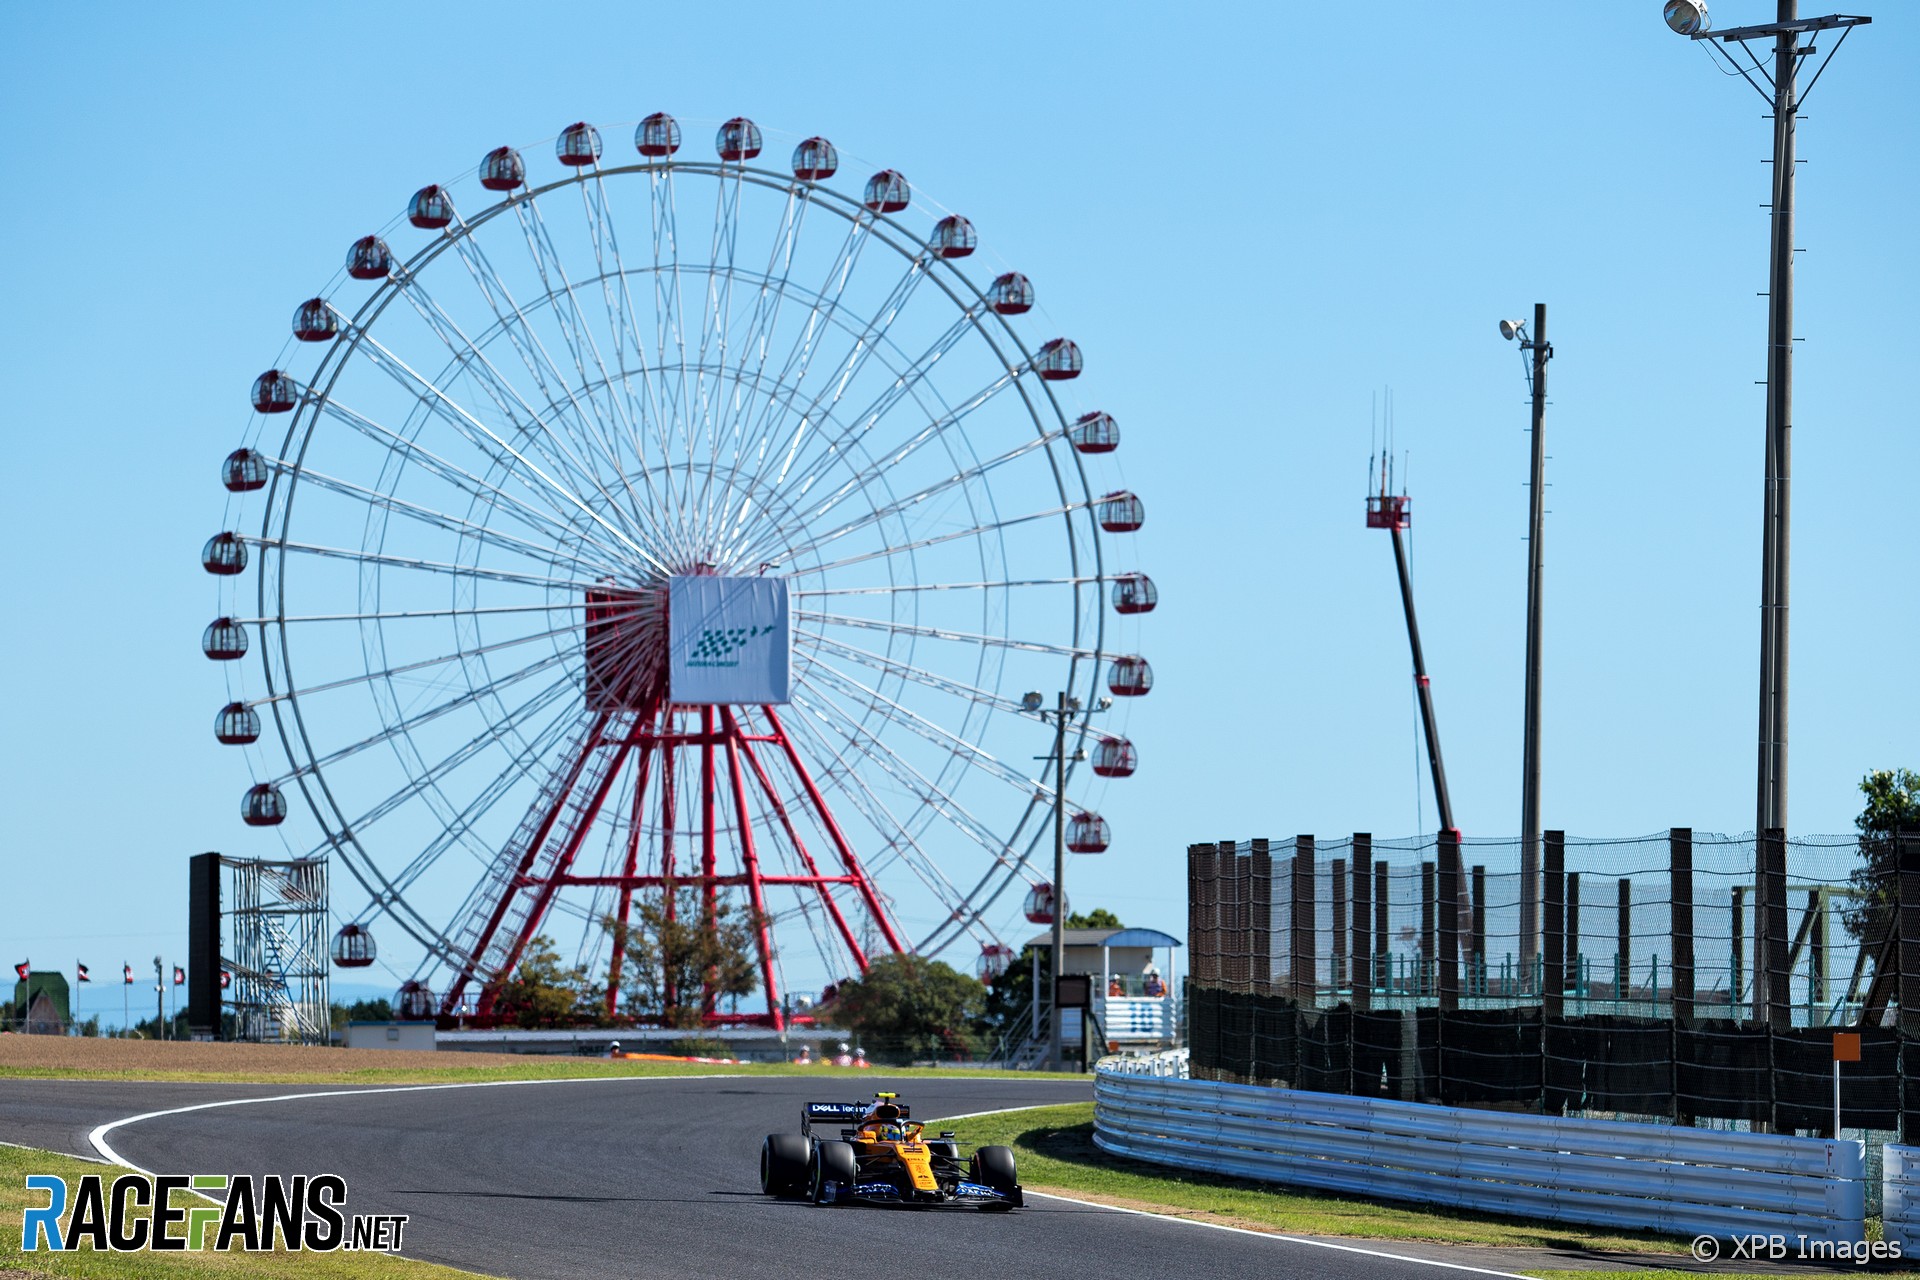 Lando Norris, McLaren, Suzuka, 2019